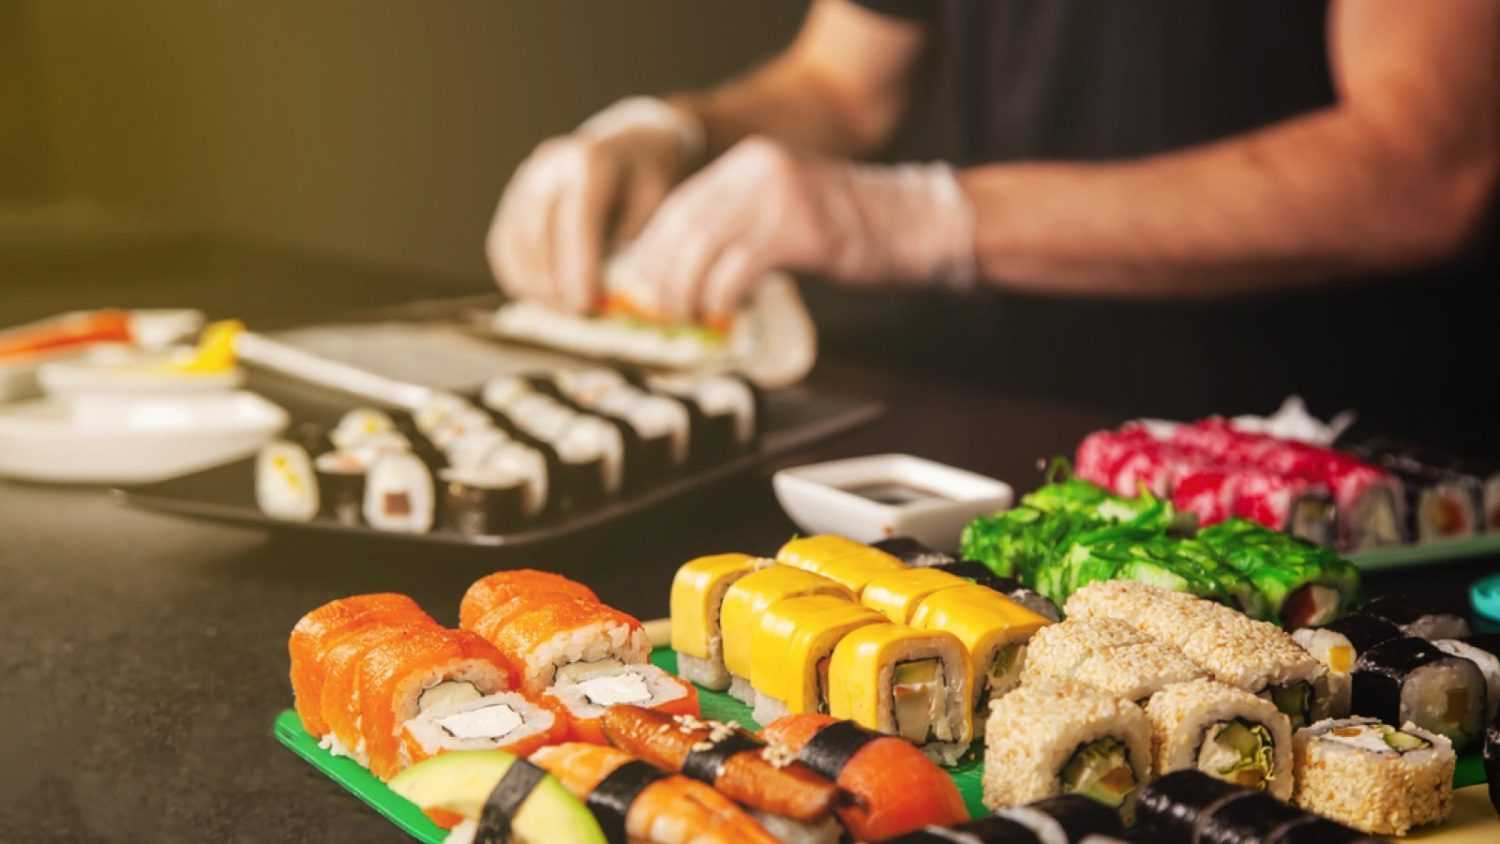 Preparing sushi rolls